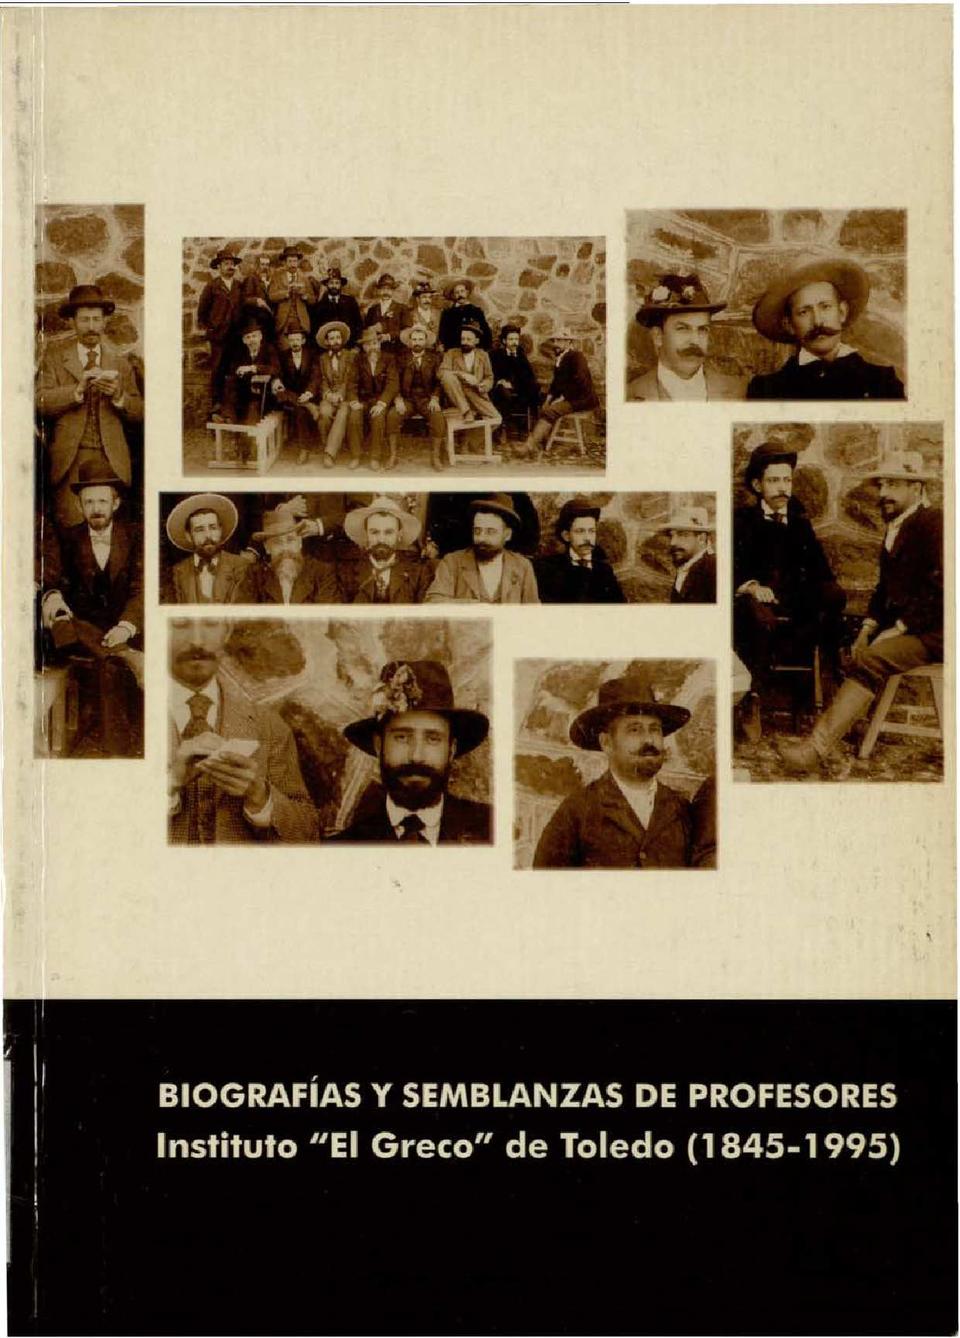 BIOGRAFÍAS y semblanzas de profesores : Instituto "El Greco" de Toledo (1845-1995) / Presentación por Juan Carlos Rebato Arias, José María Ruiz Alonso [et al.].-. [Monografía]